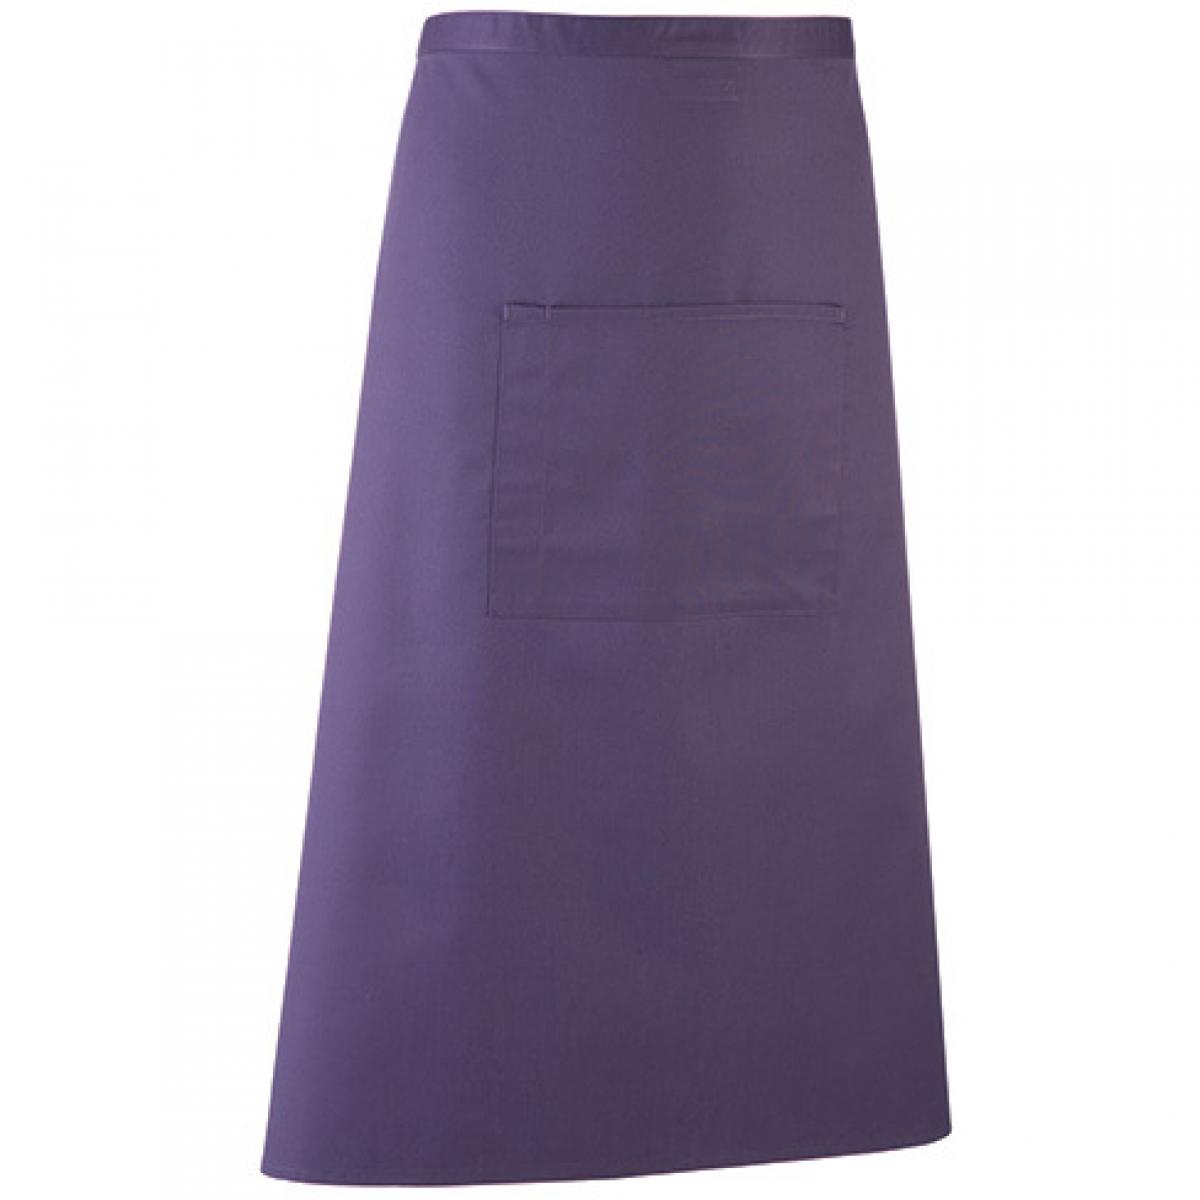 Hersteller: Premier Workwear Herstellernummer: PR158 Artikelbezeichnung: Barschürze Colours - 90 x 80 cm - Hauswäsche: bis 60 °C Farbe: Purple (ca. Pantone 269)